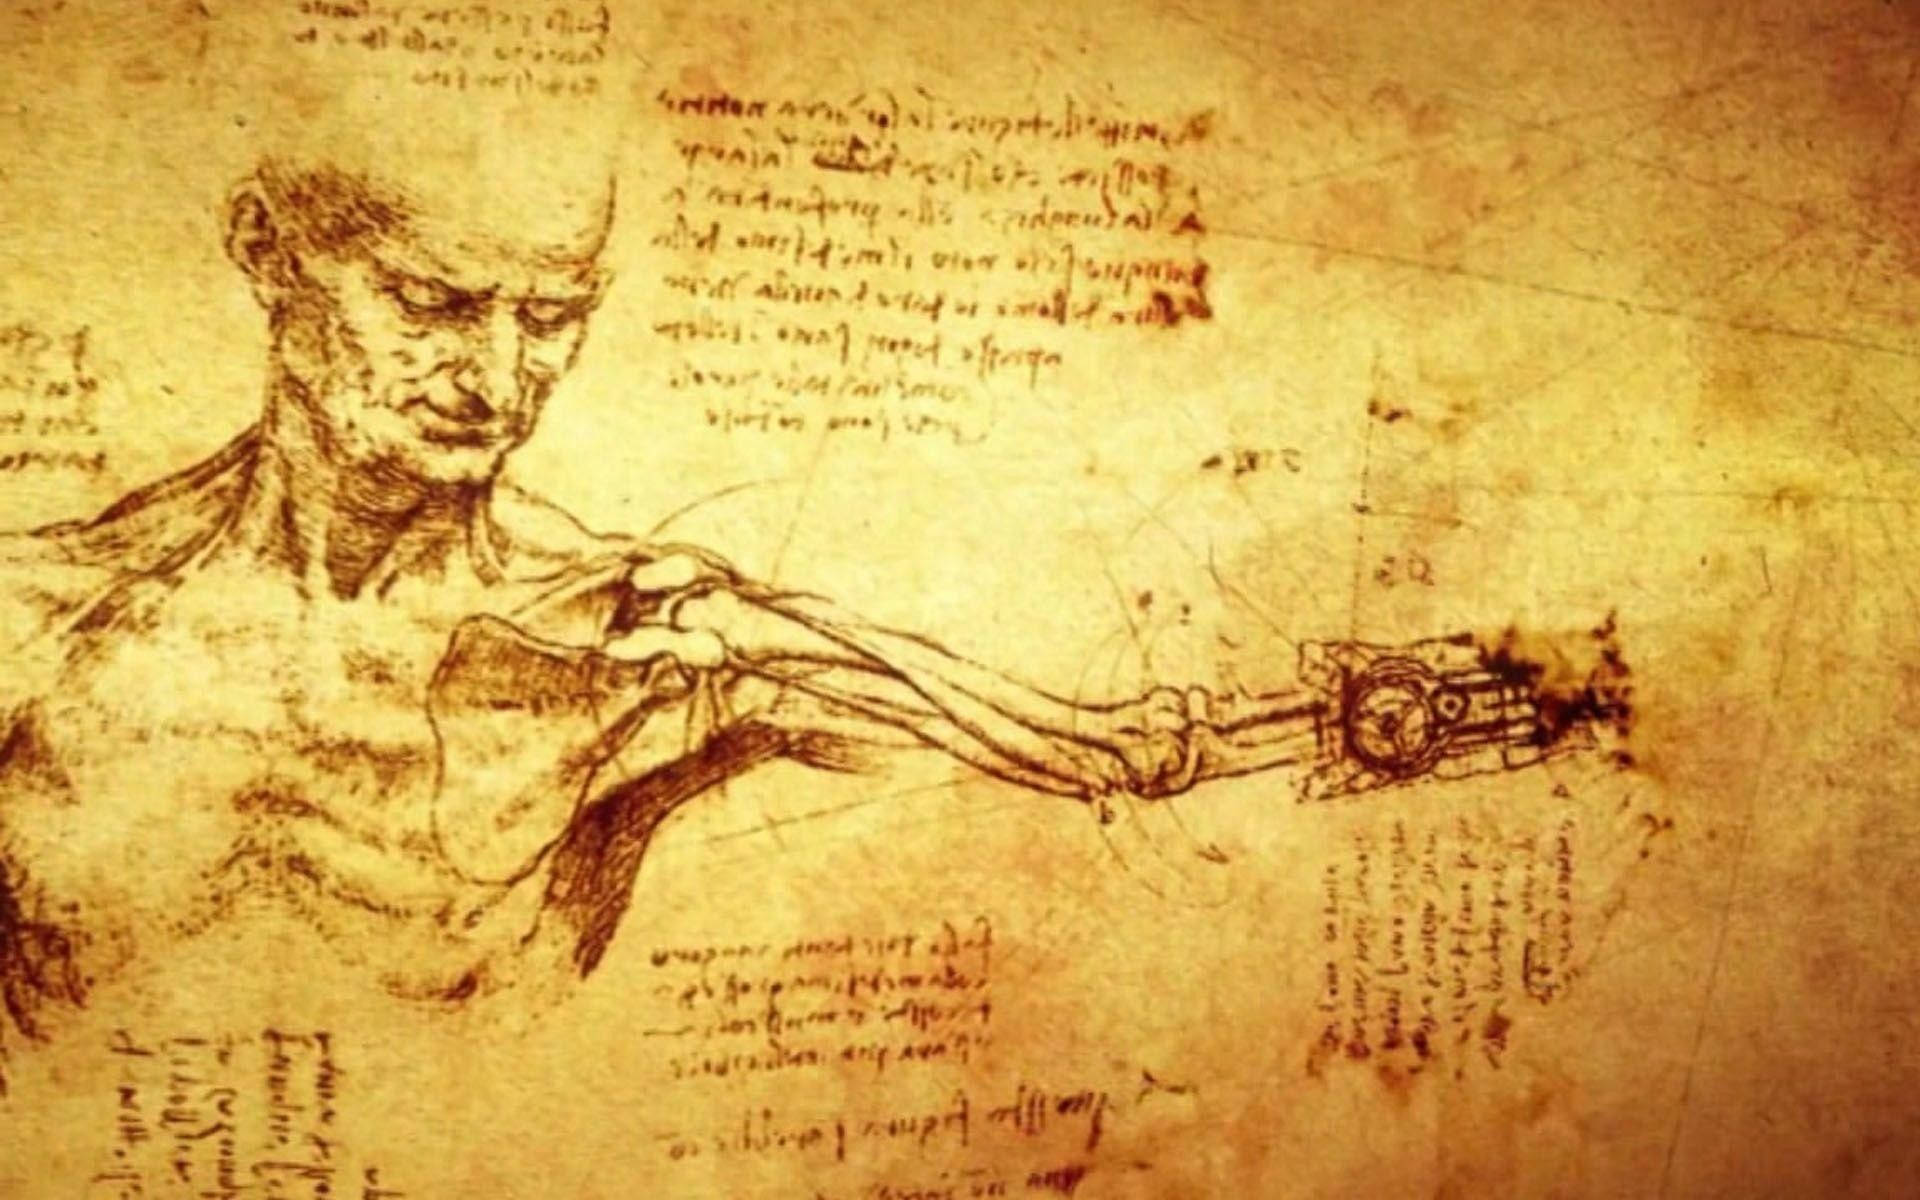 Download Leonardo Da Vinci Anatomical Drawings Wallpaper | Wallpapers.com